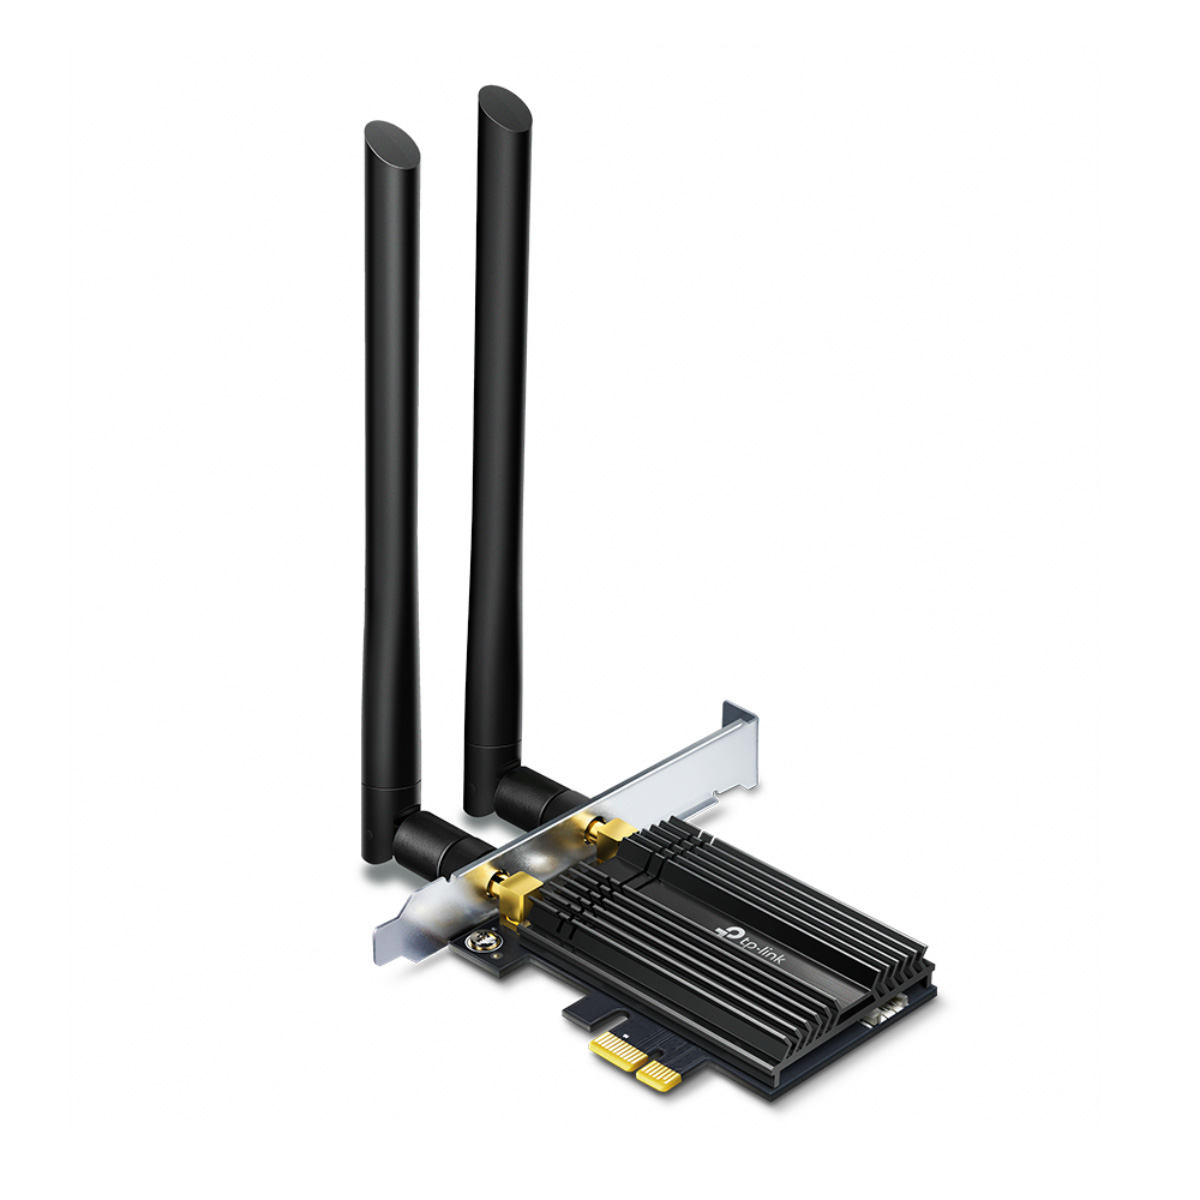 Placa de Rede Wi-Fi PCI Express TP-Link Archer TX50E AX3000 - Wi-Fi e Bluetooth - Dual Band 2.4 GHz e 5 GHz - 2 Antenas